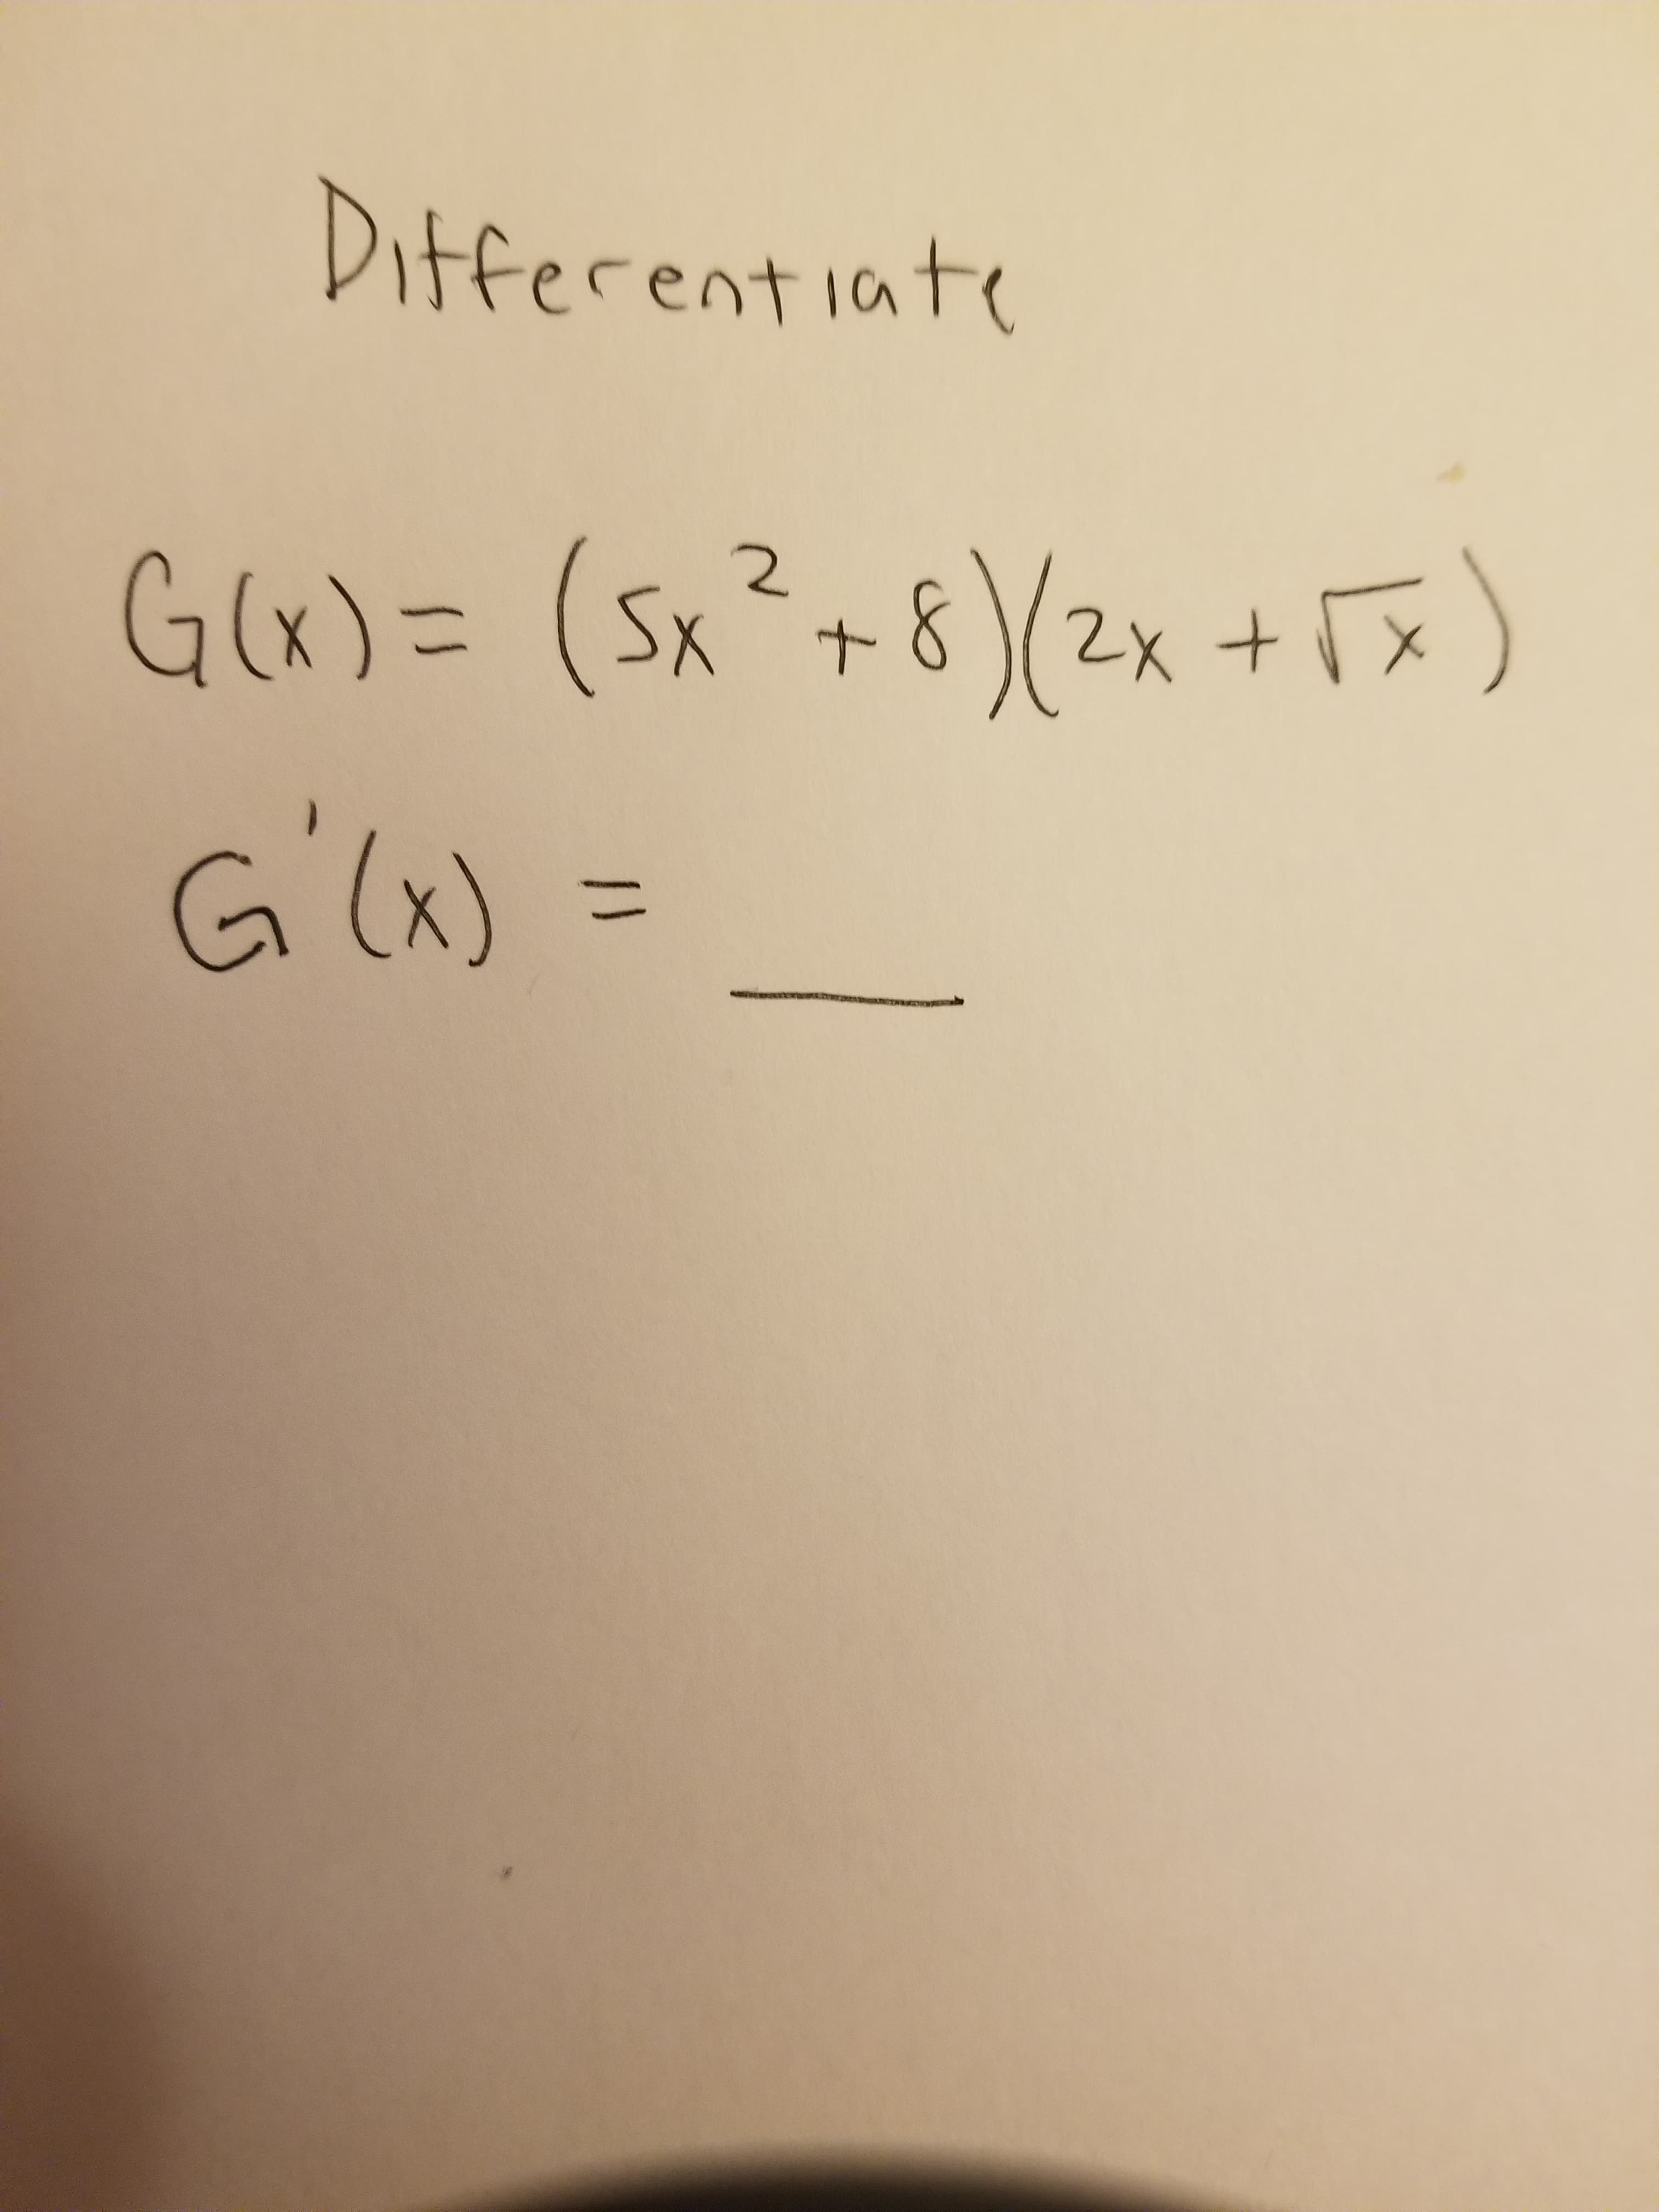 Different iate
G(x)= (Sx²+8)(2x +Tx)
)(2x+Fx)
G'W =
G(x)
%3D
